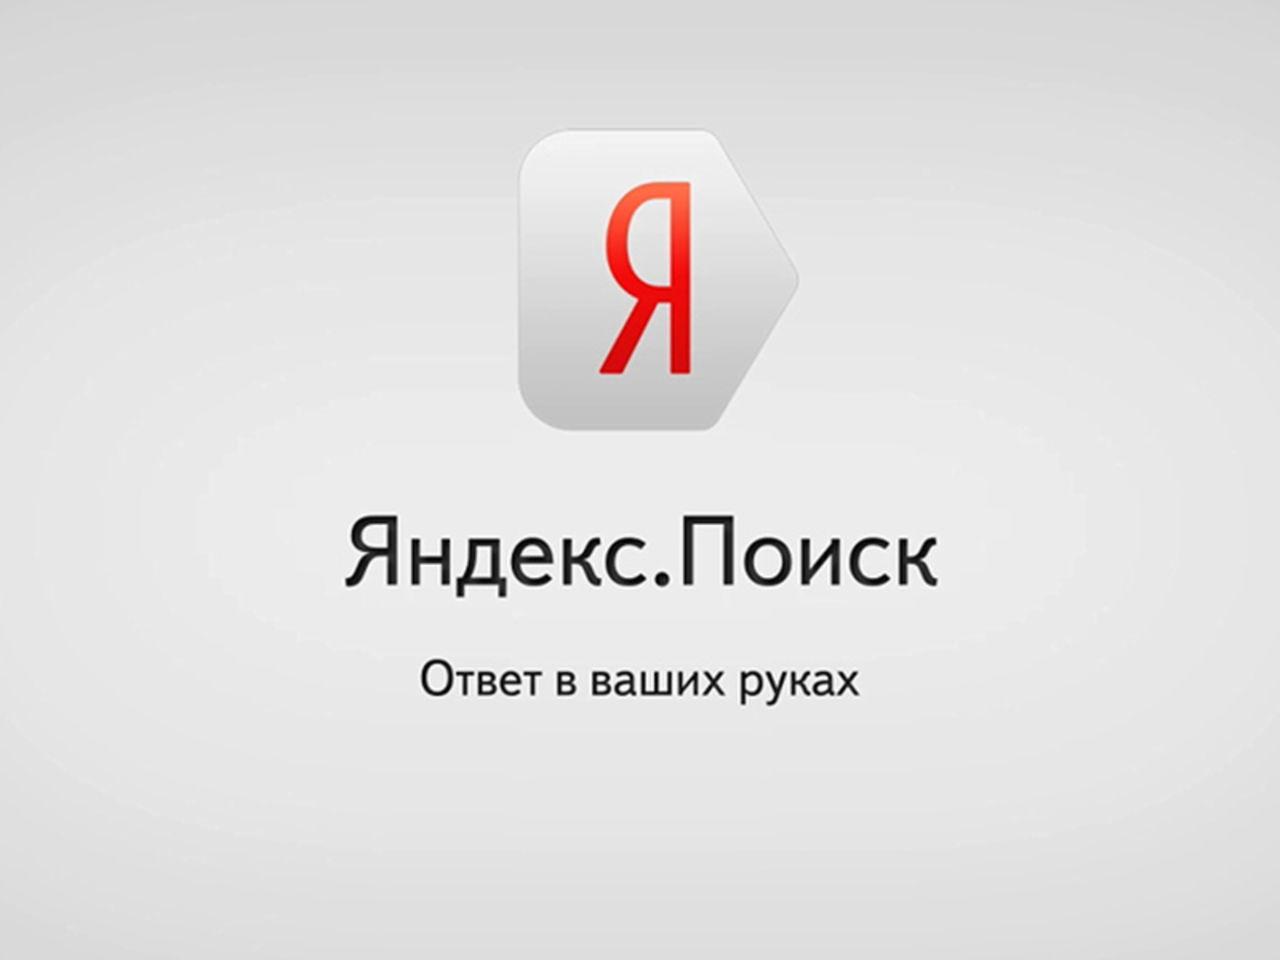 Сделать Яндекс стартовой страницей в Microsoft Edge